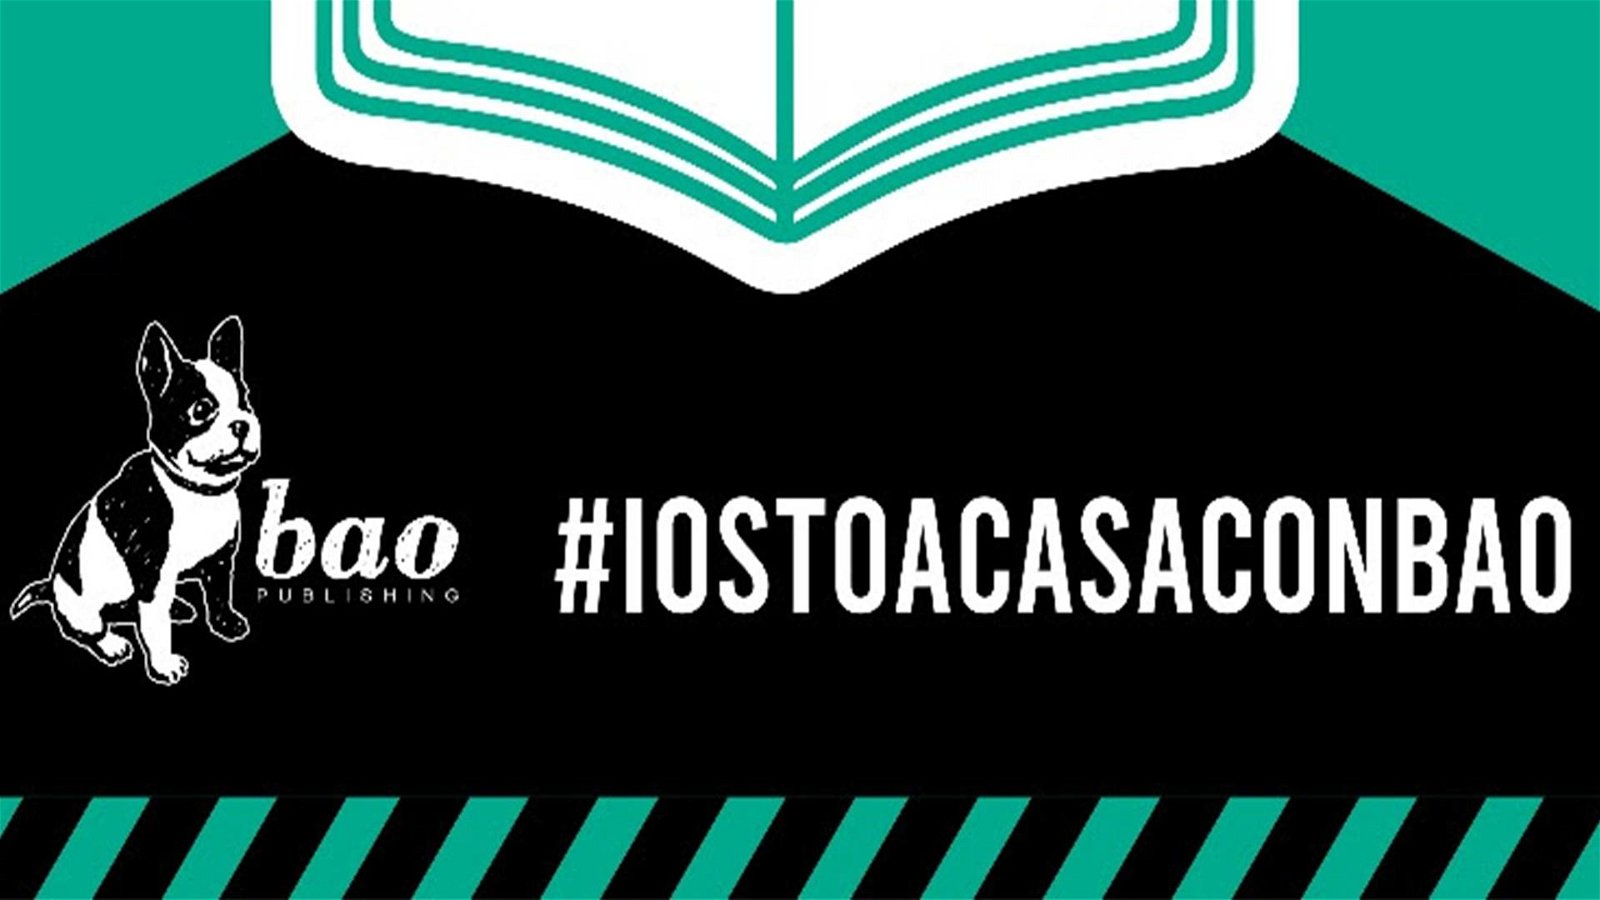 Immagine di Bao Publishing e #iostoacasaconbao: le iniziative per tenere compagnia ai propri lettori